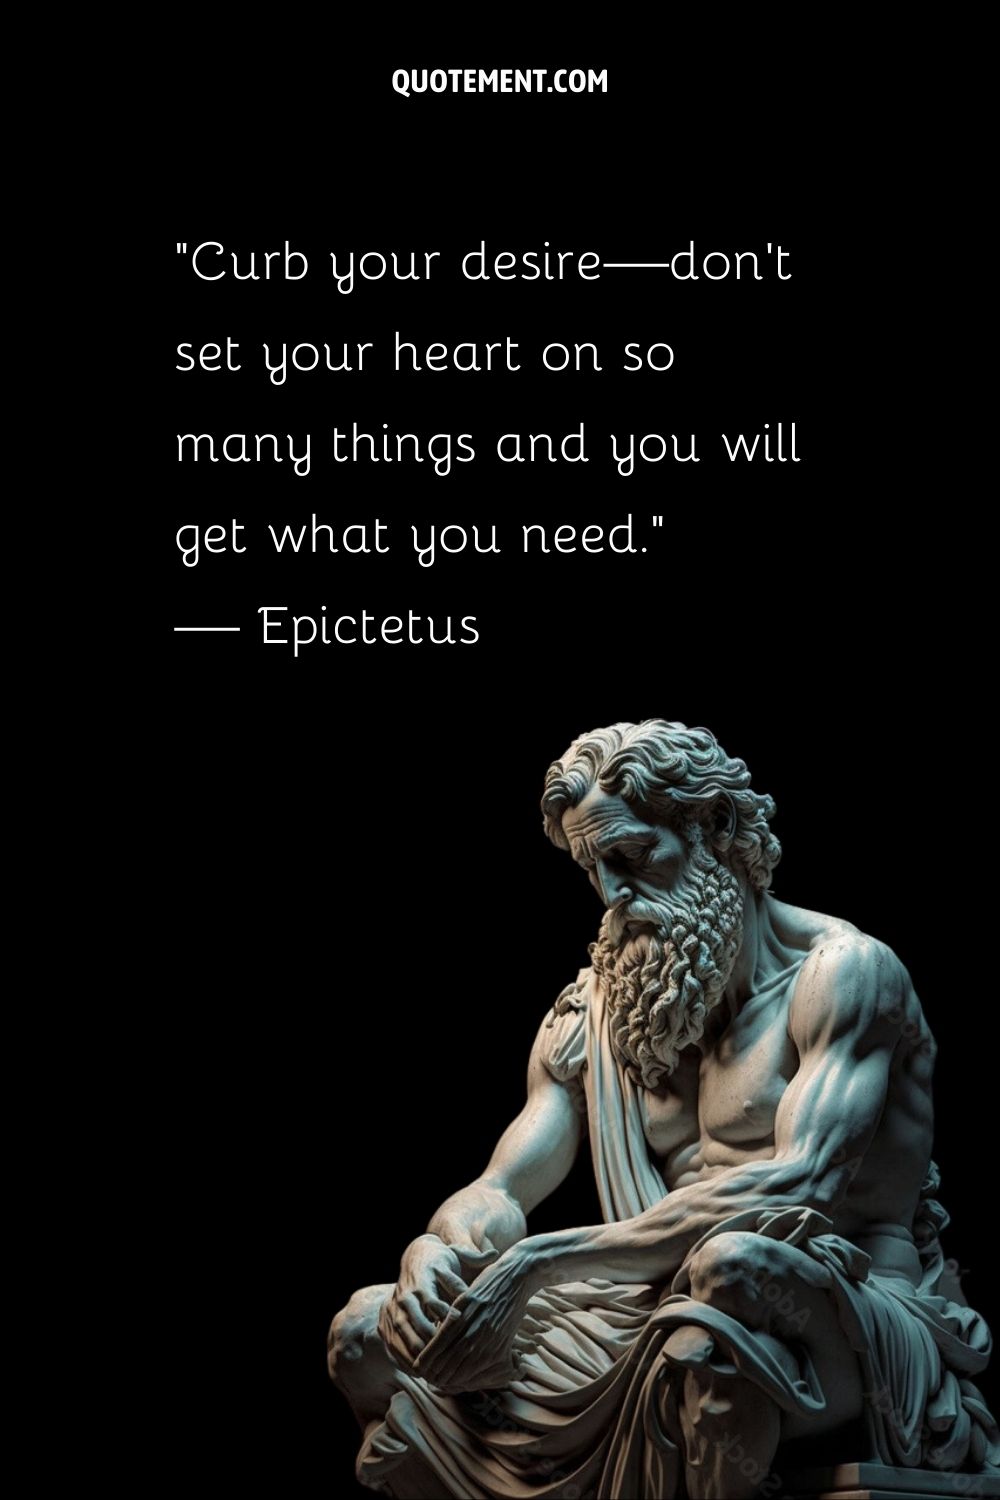 Las estoicas enseñanzas de Epicteto susurran a través del mármol perdurable.